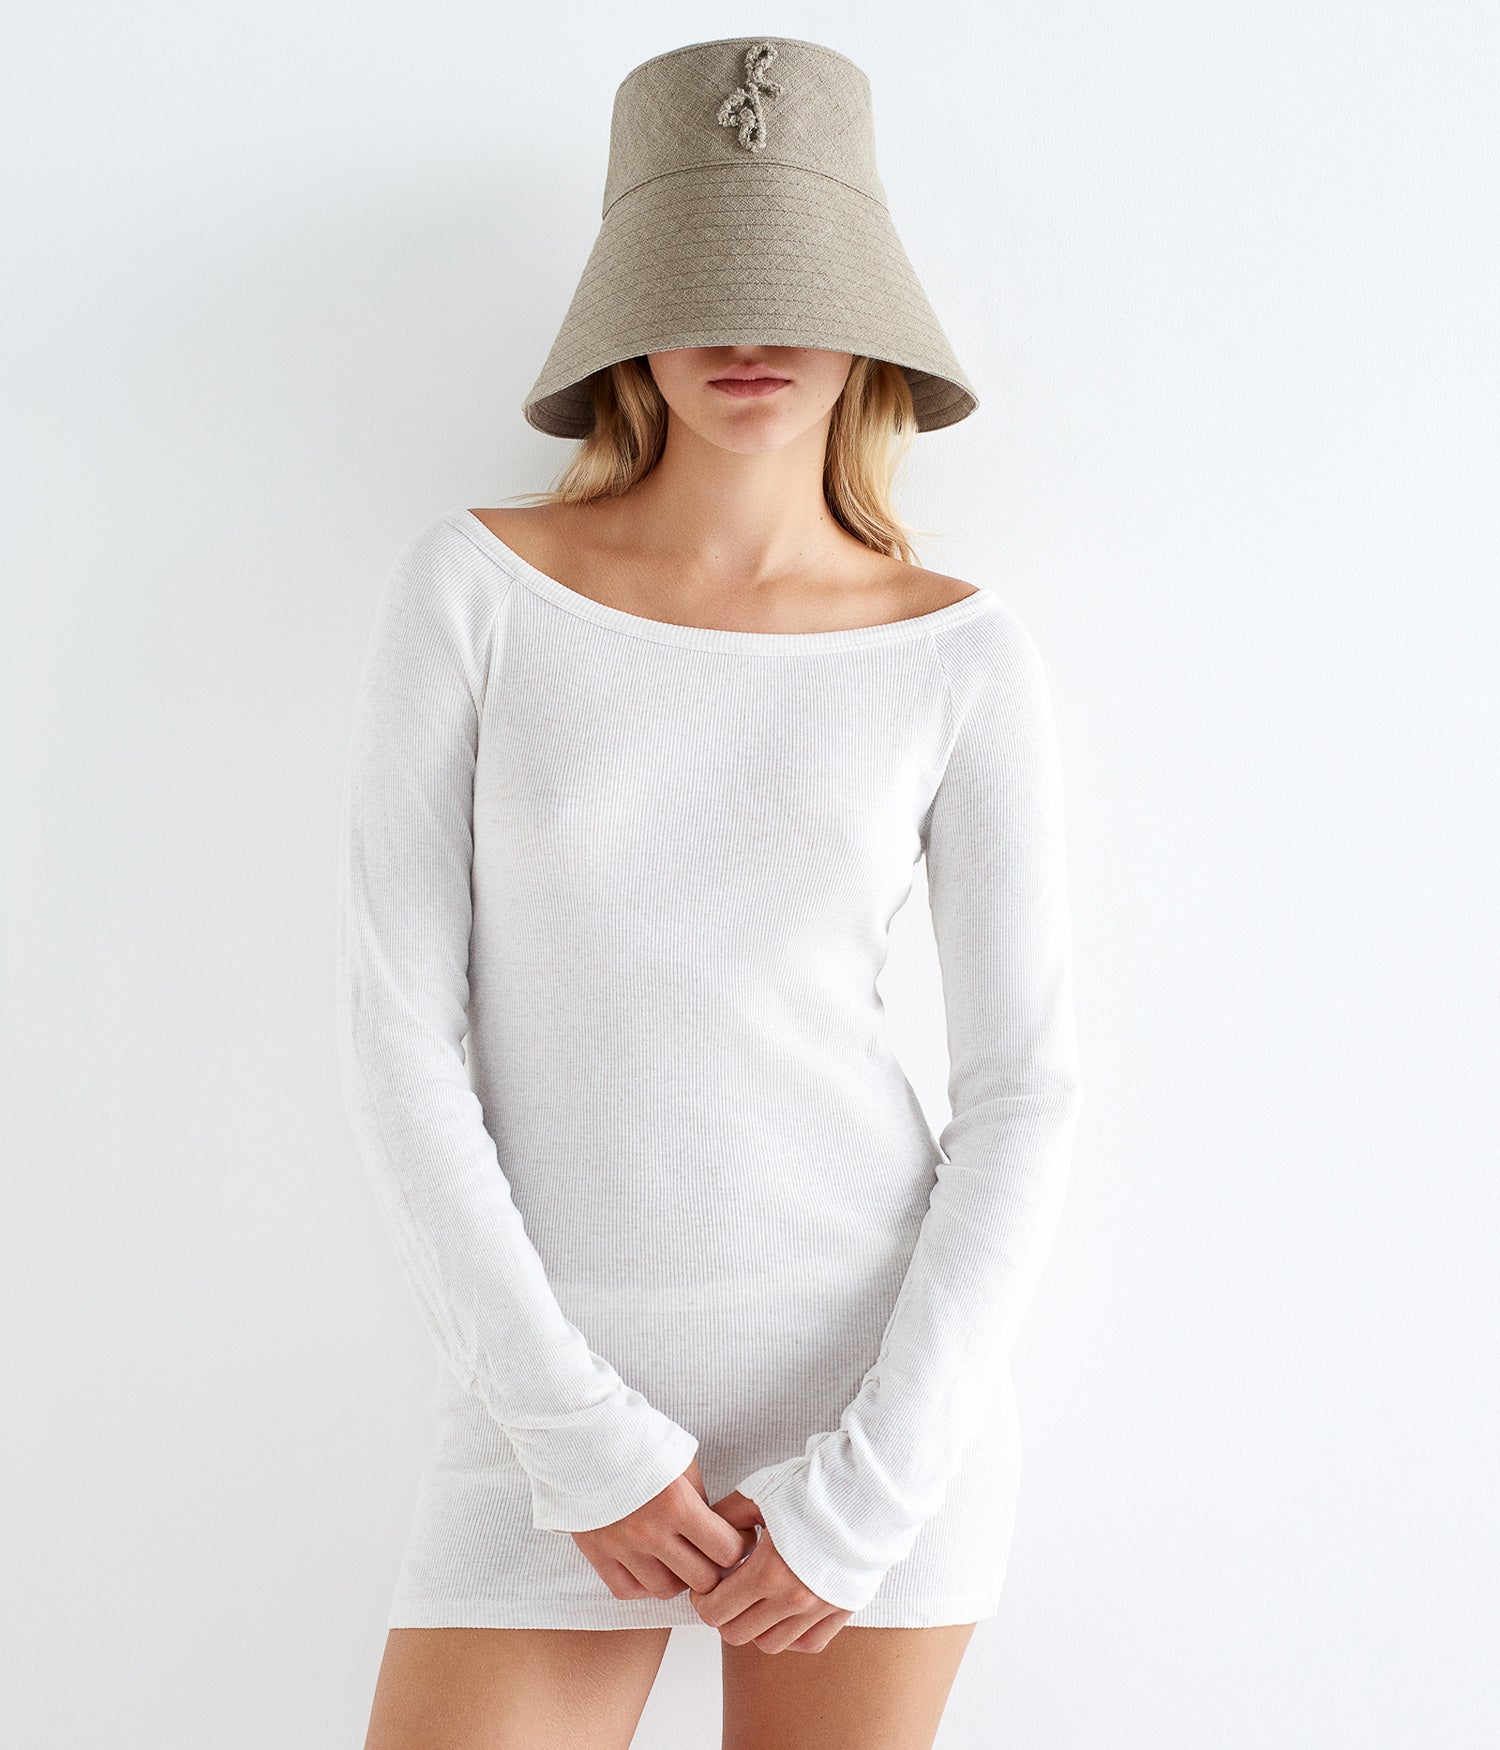 Monogram-Embelished Wide-Brimmed Linen Hat